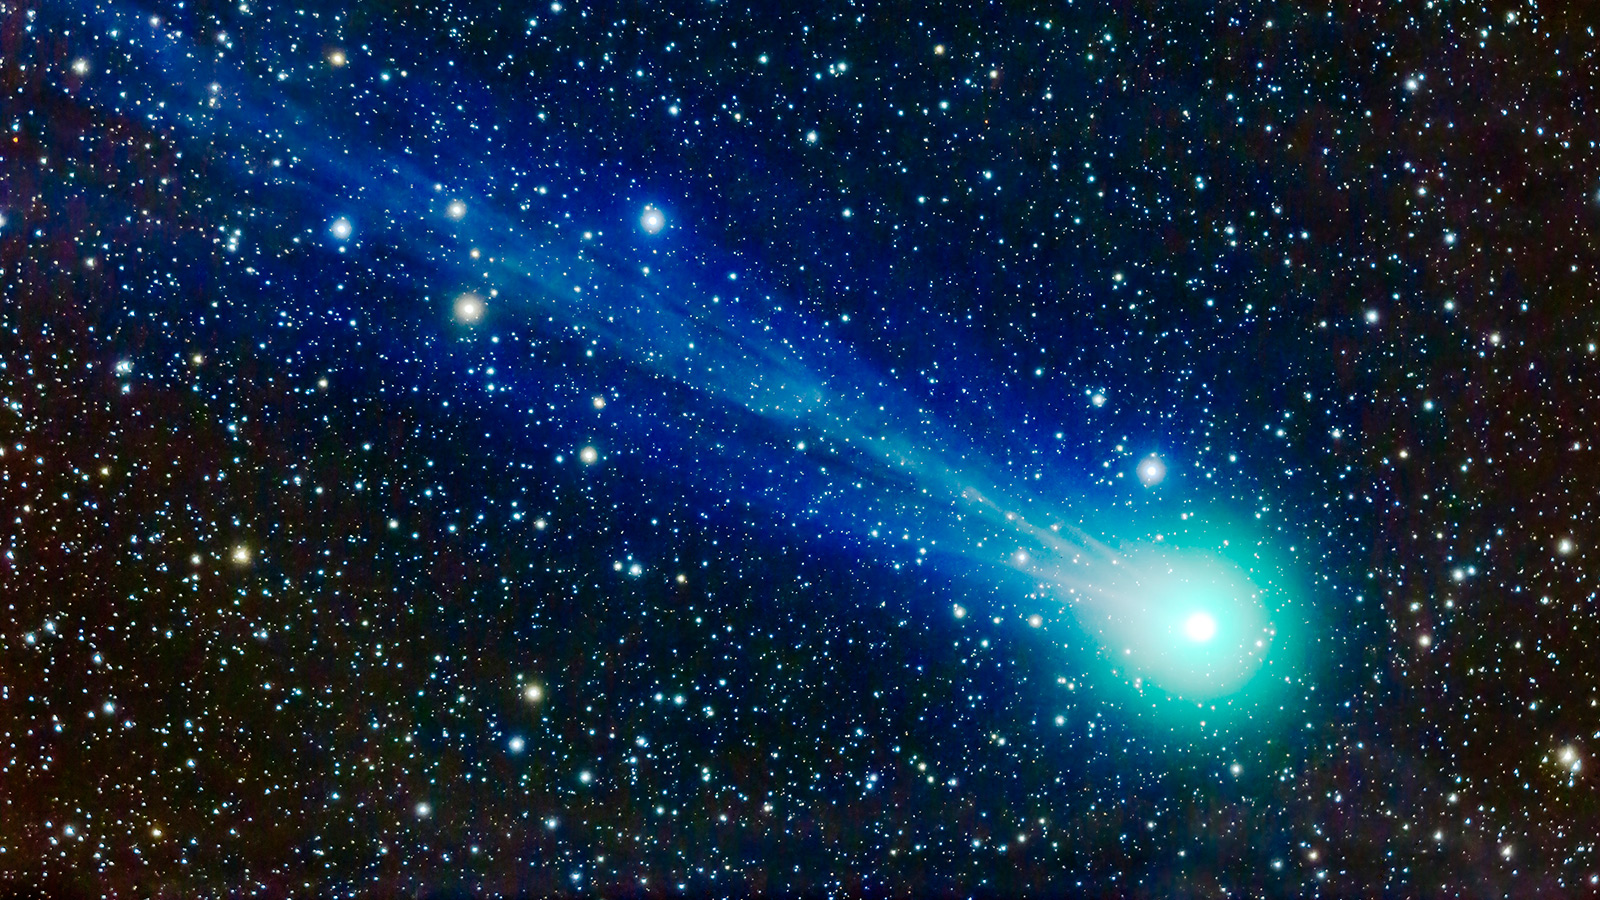 Comet Lovejoy (C/2014 Q2).